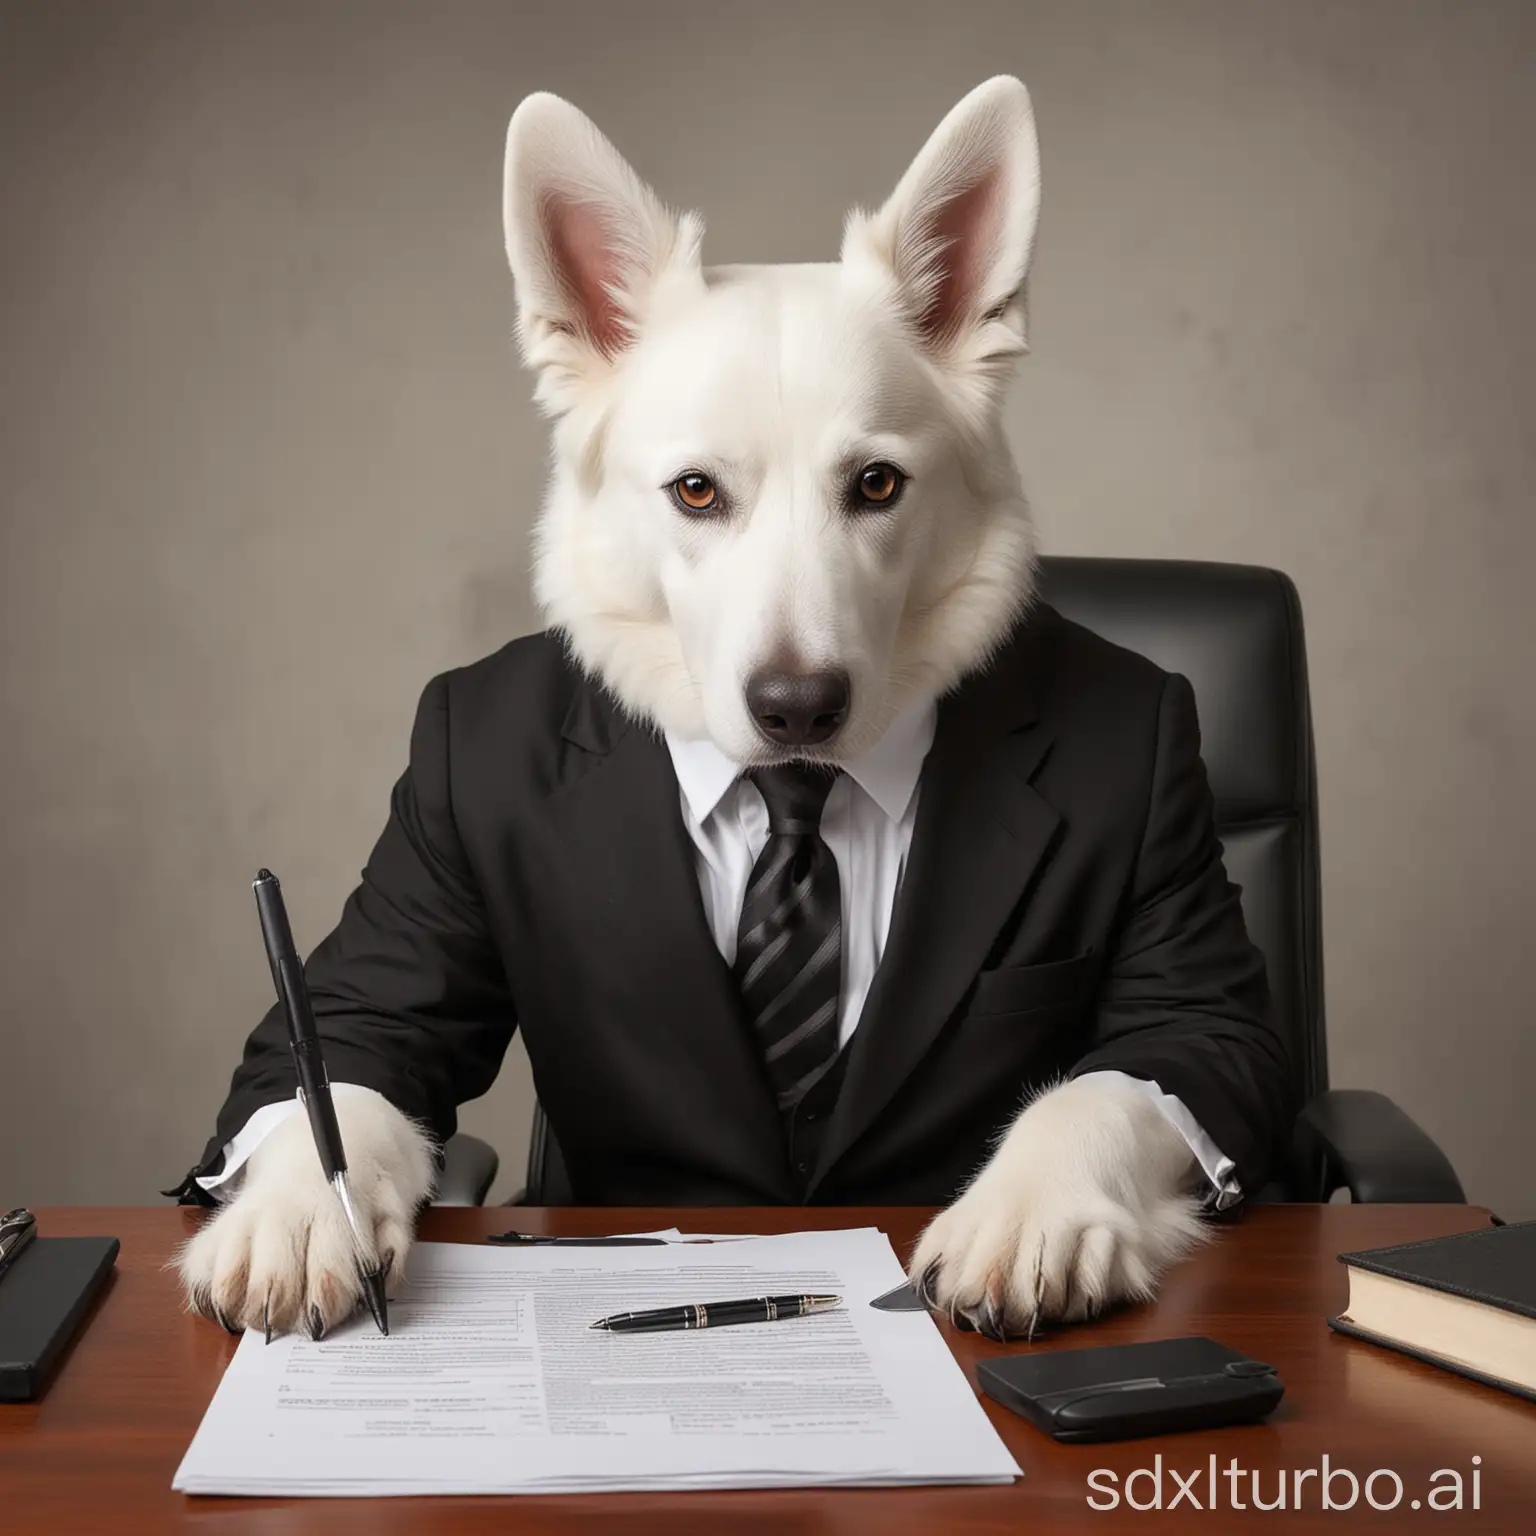 weisser schweizer schäferhund als Direktor mit Anzug und Krawatte am Schreibtisch beim Unterzeichnen von Akten